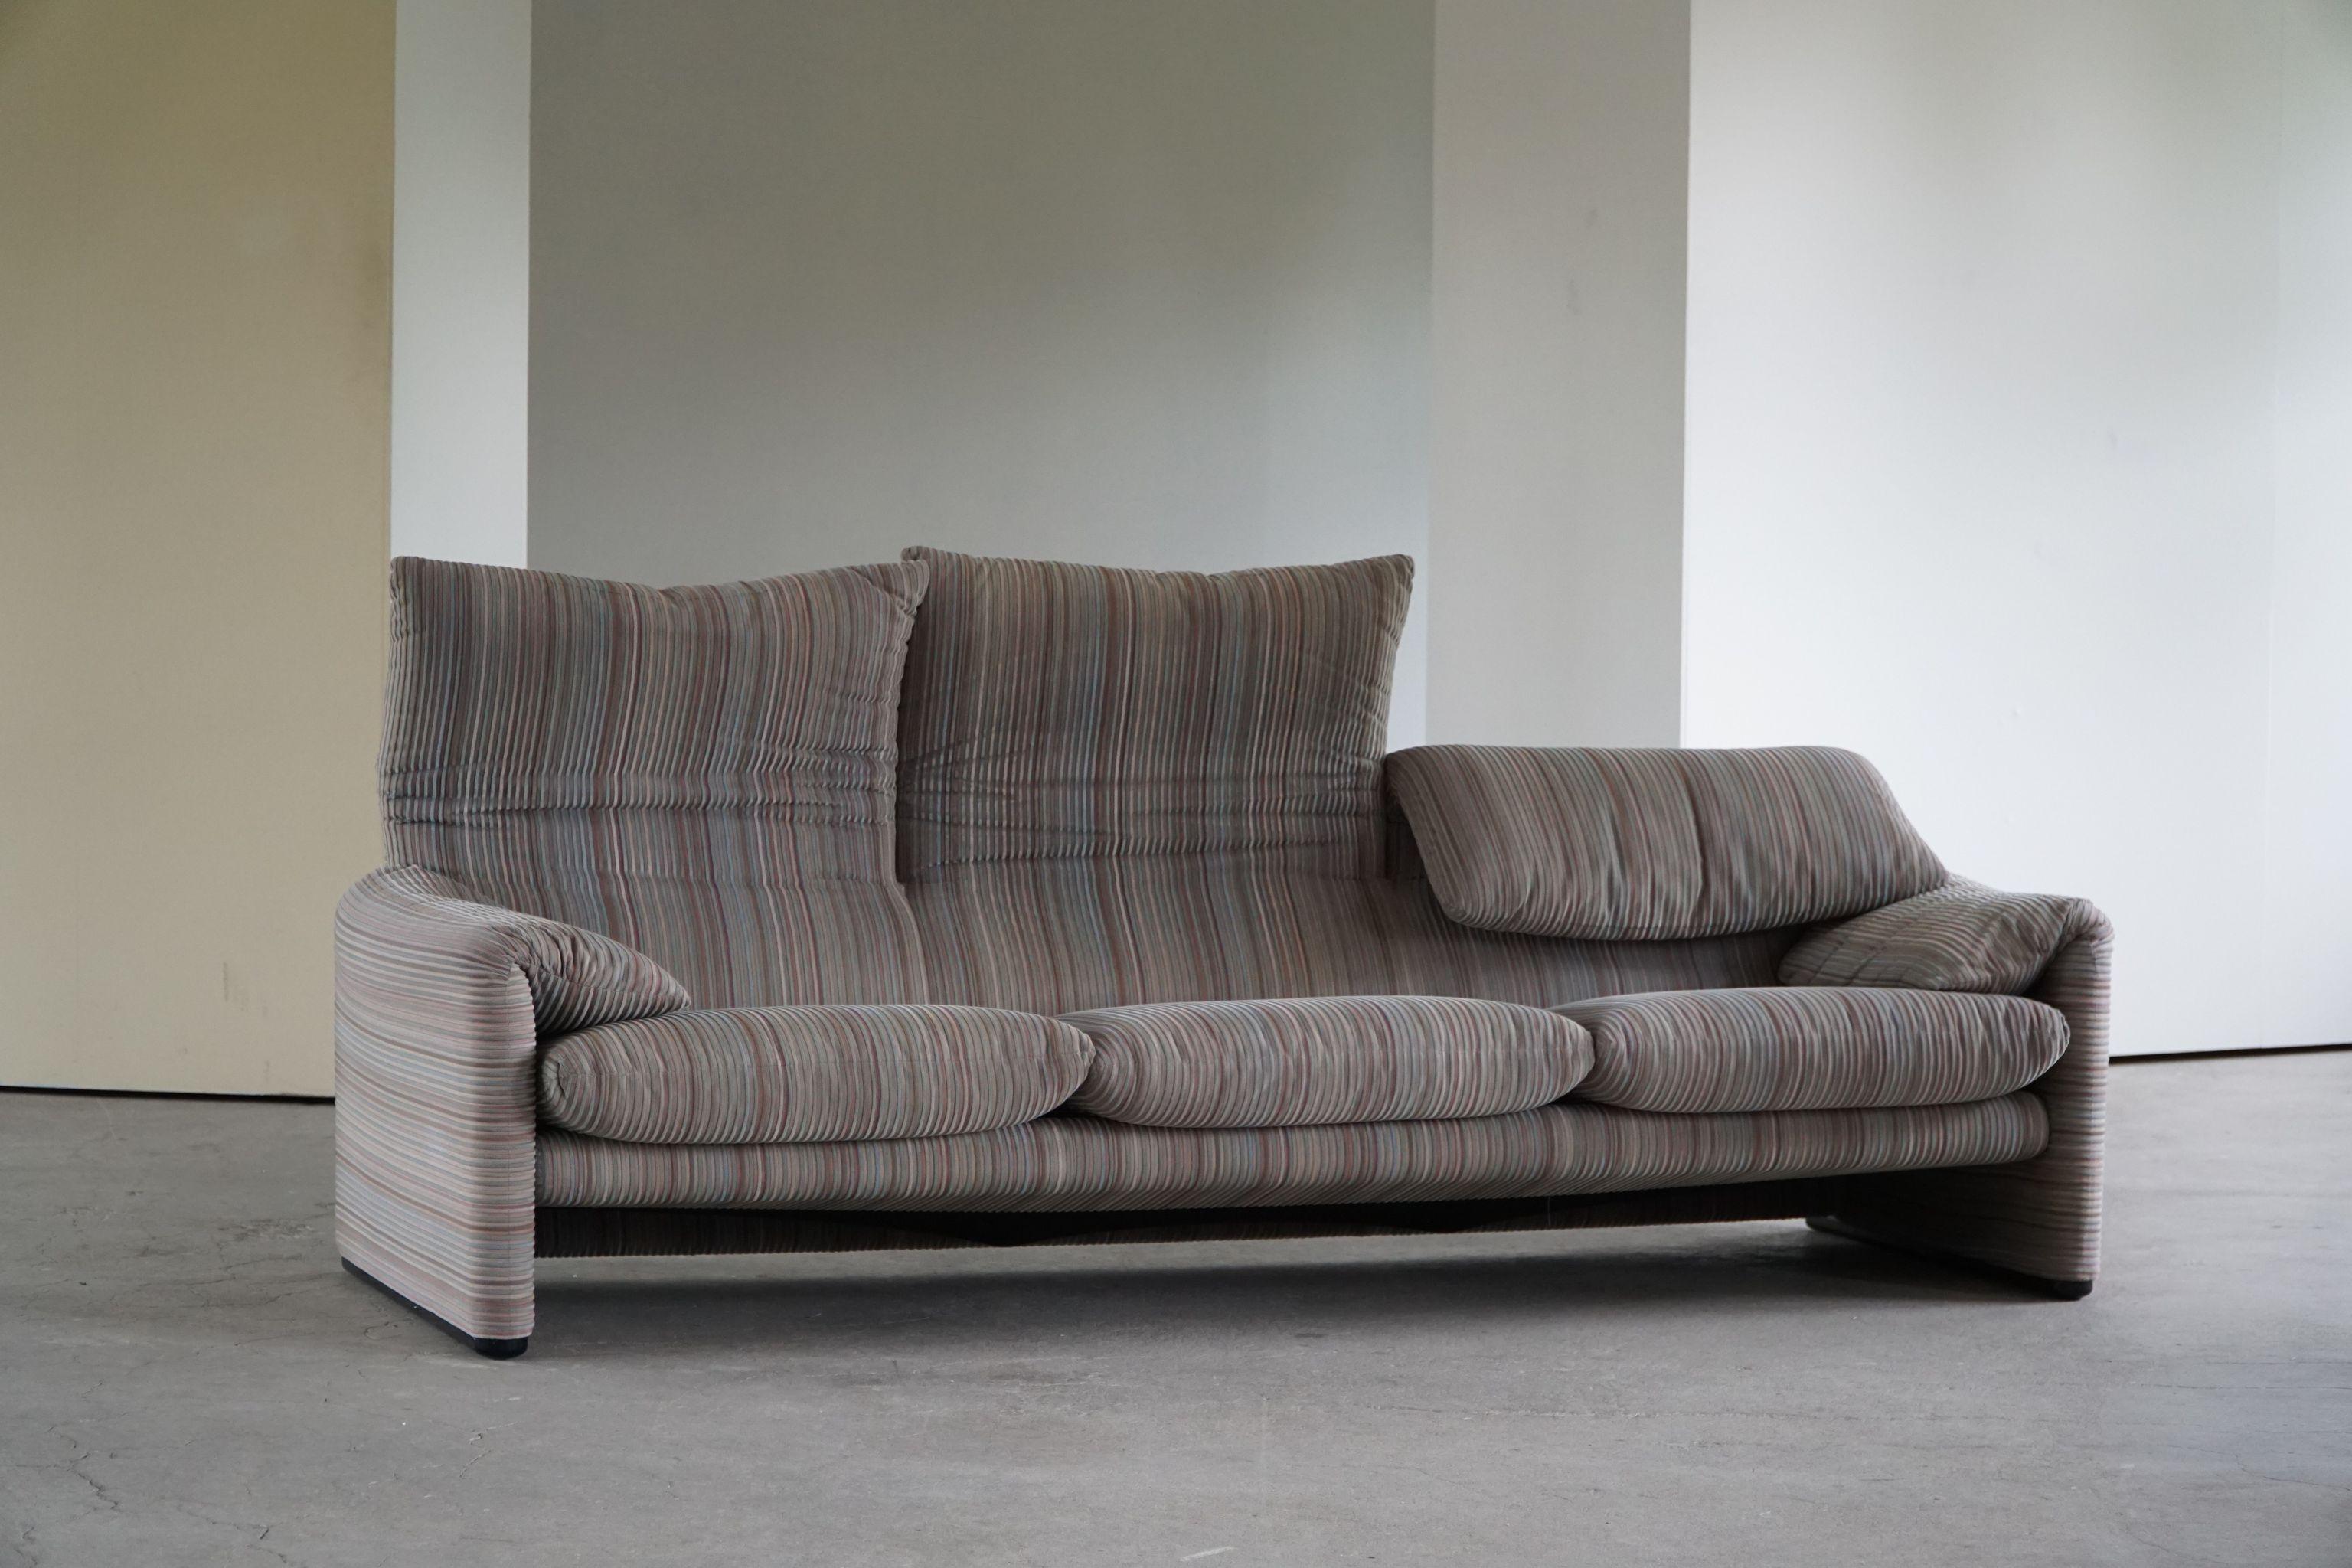 Fabric Vico Magistretti, Maralunga Three Seater Sofa for Cassina, Italian Modern, 1970s